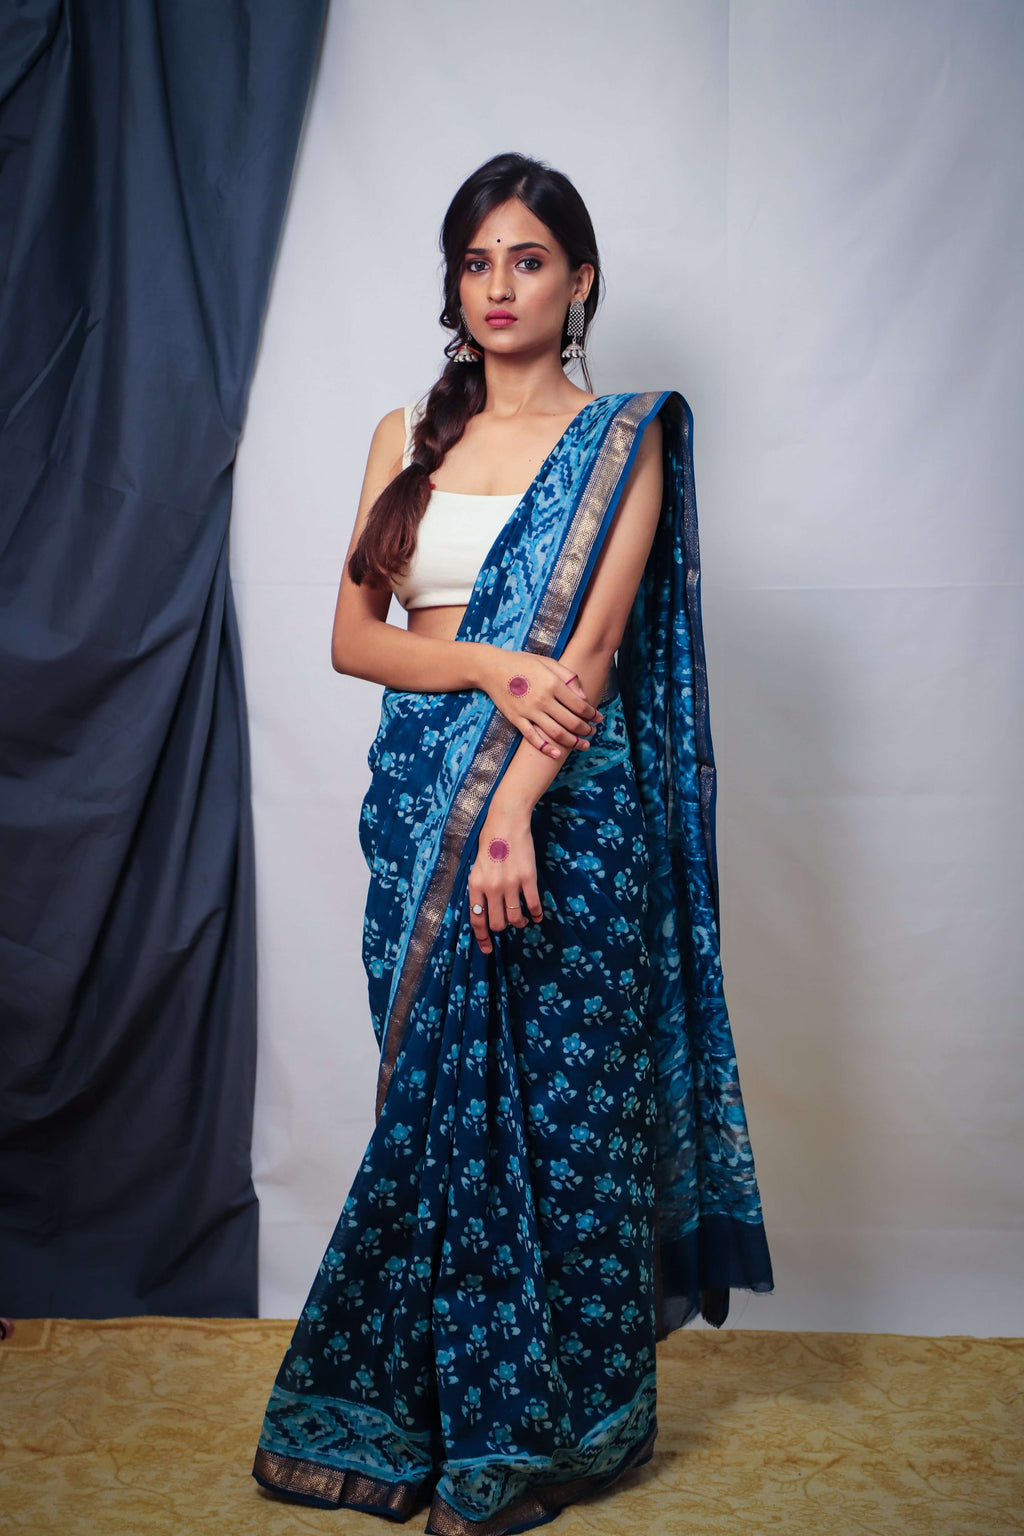 Buy COTTON INDIA Handblock Printed Indigo Linen Saree Saree withe blouse  Women's Lileen Saree indigo Bagru Print Saree at Amazon.in